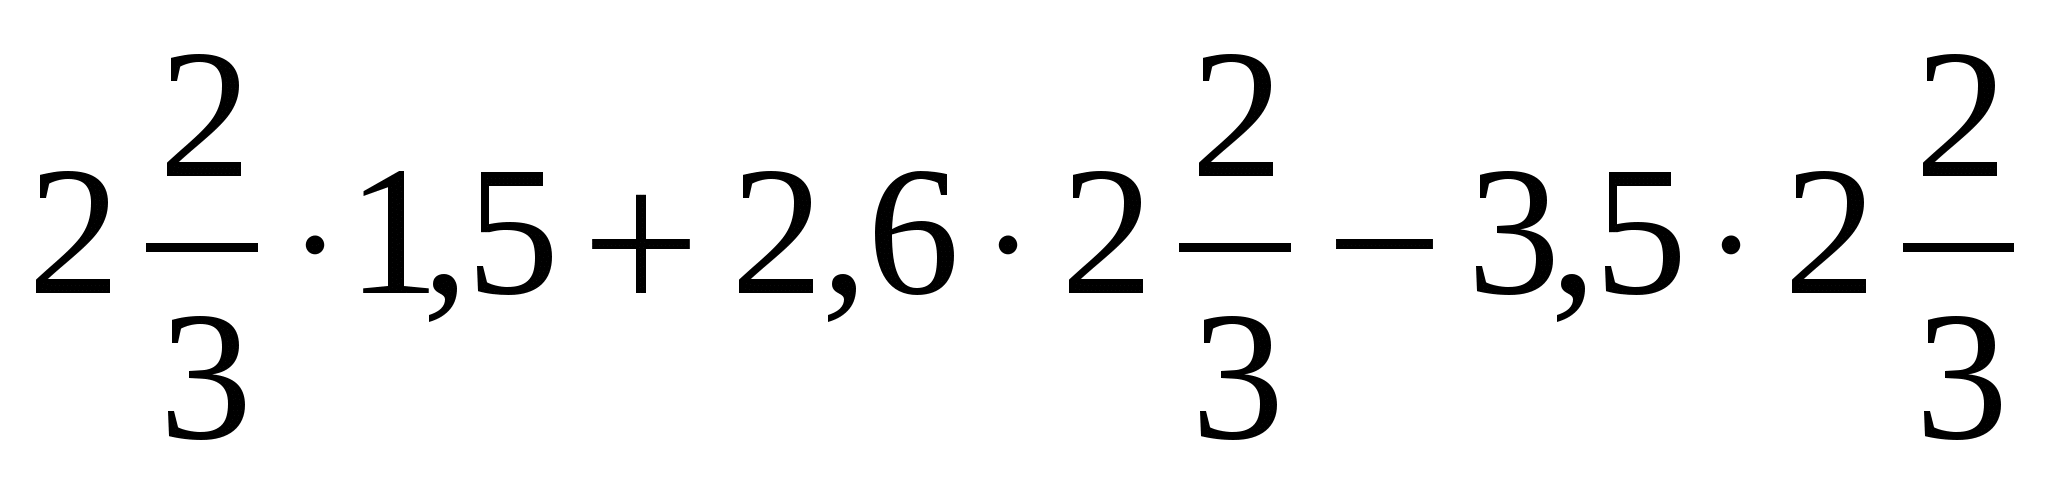 ТестУмножение и деление положительных и отрицательных чисел (6 класс)